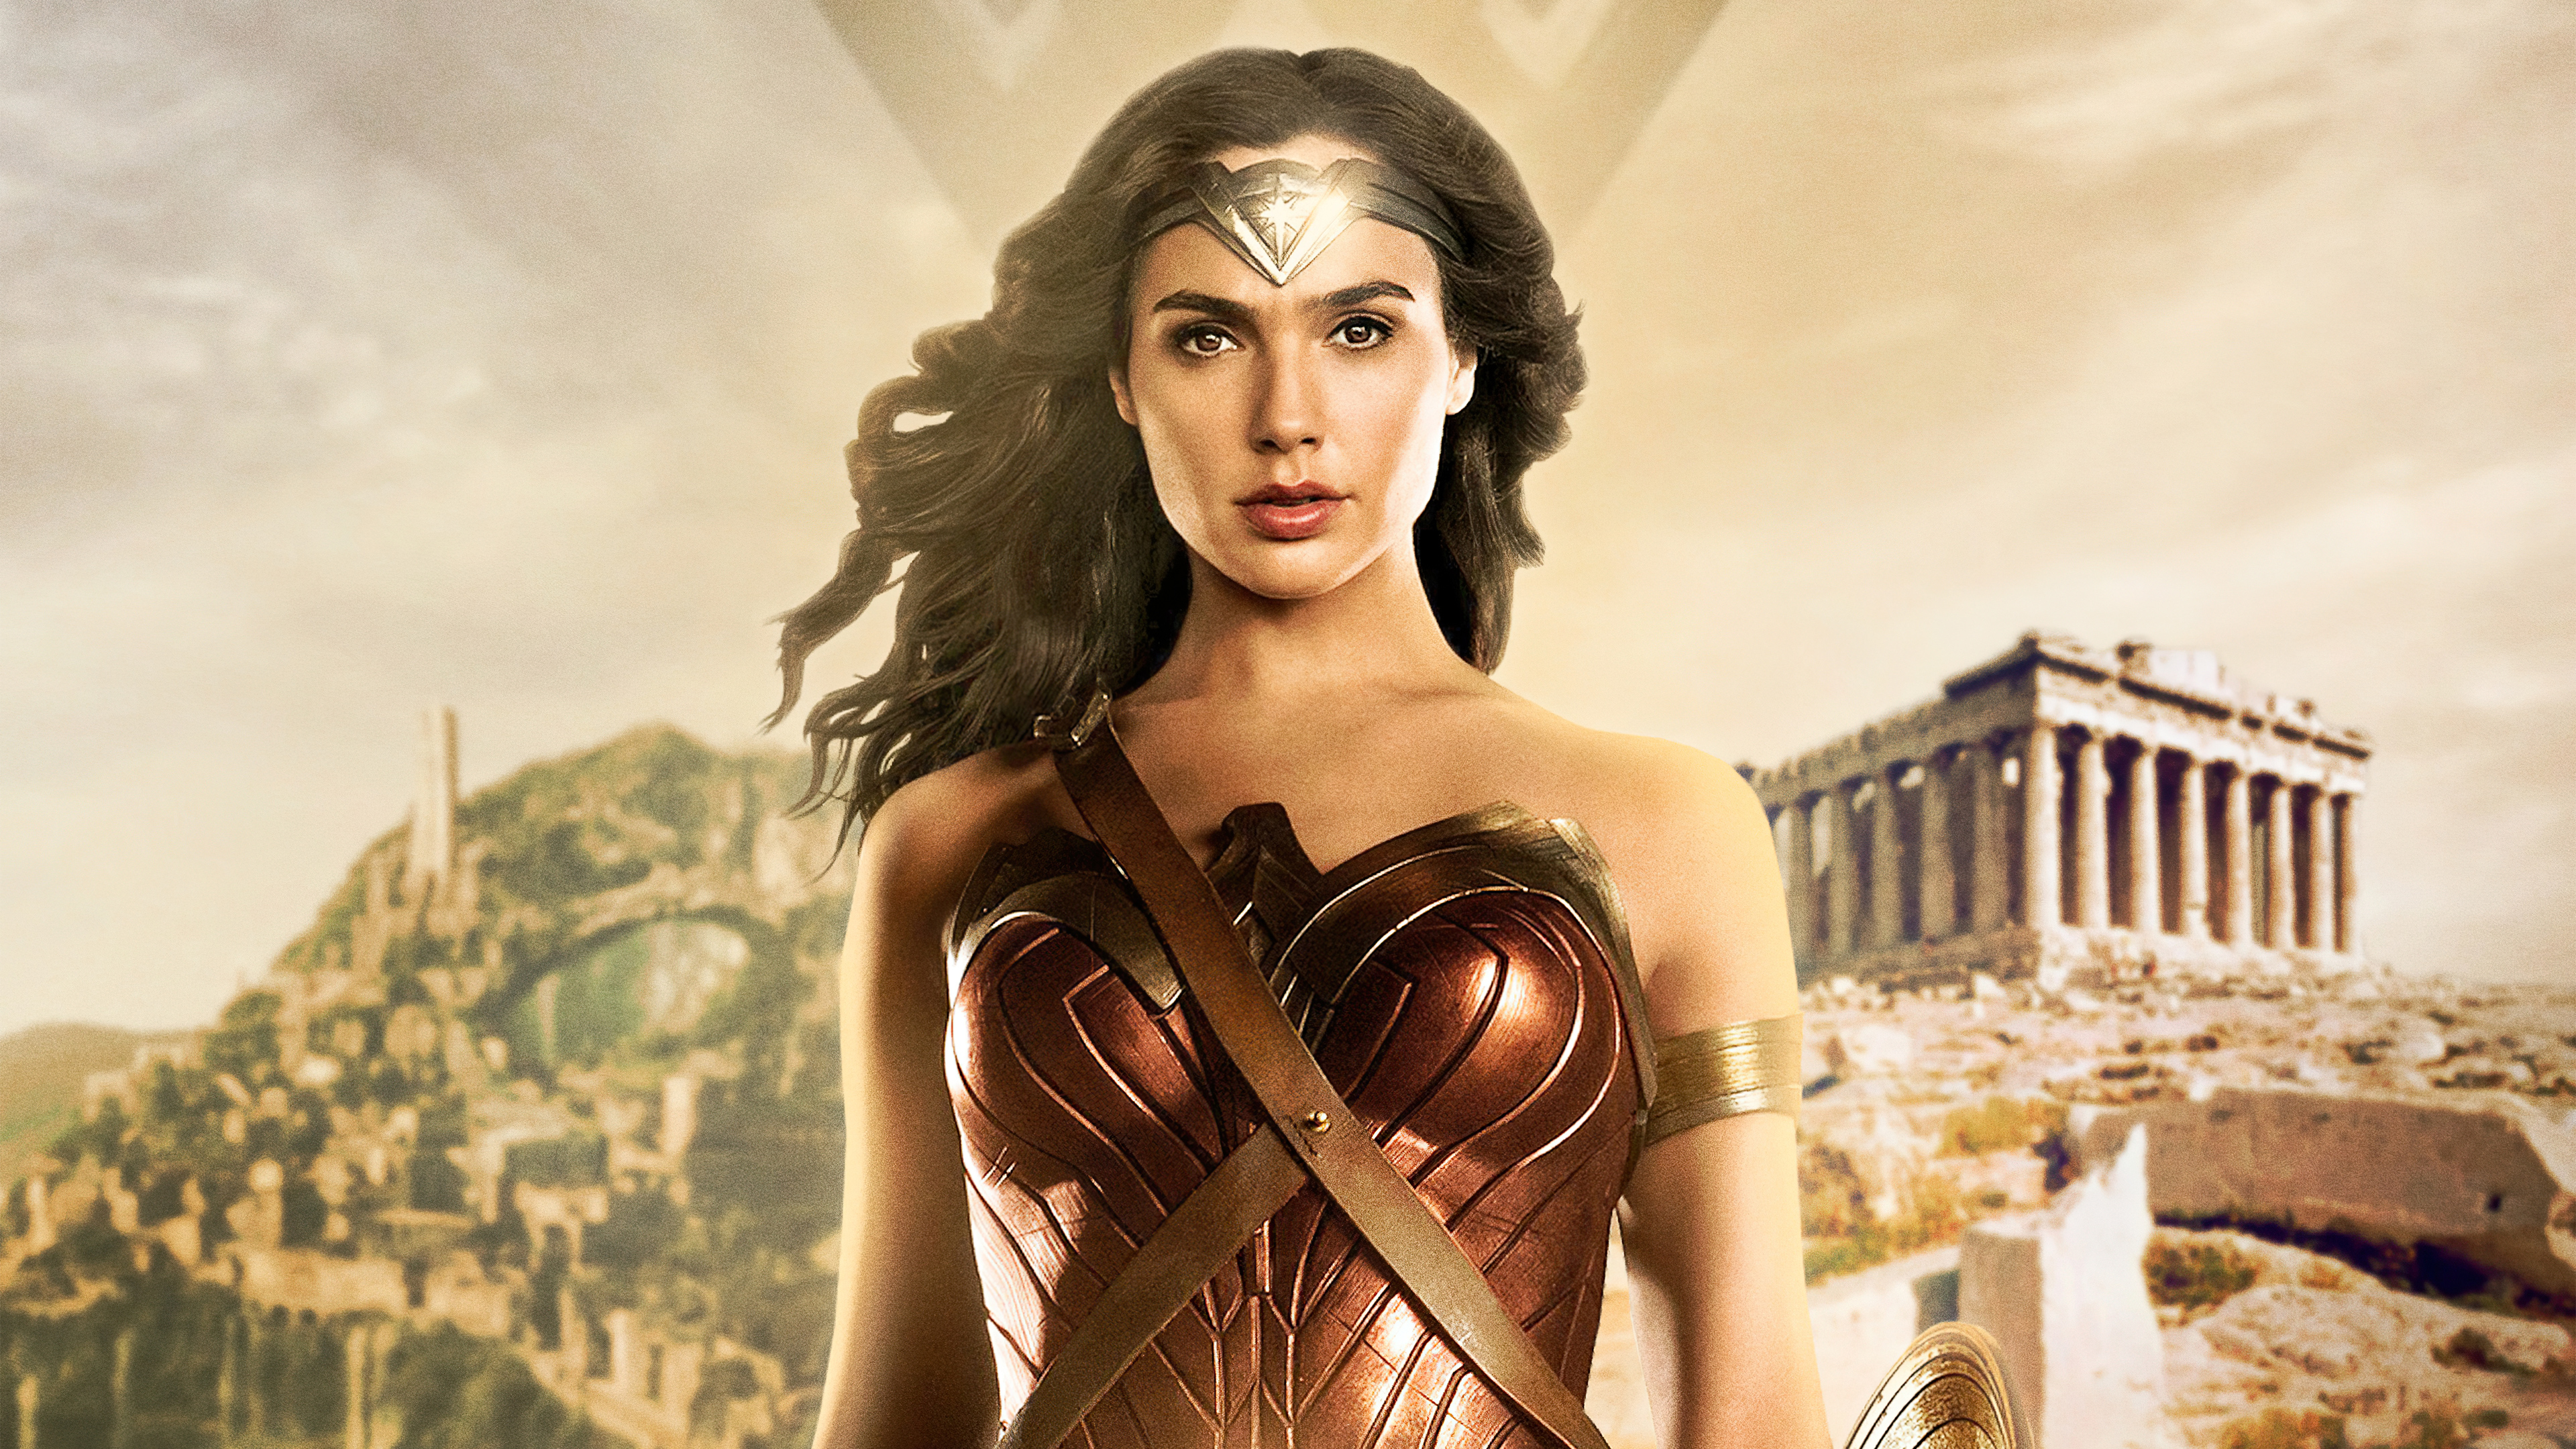 Wallpaper Gal Gadot as Wonder Woman 84